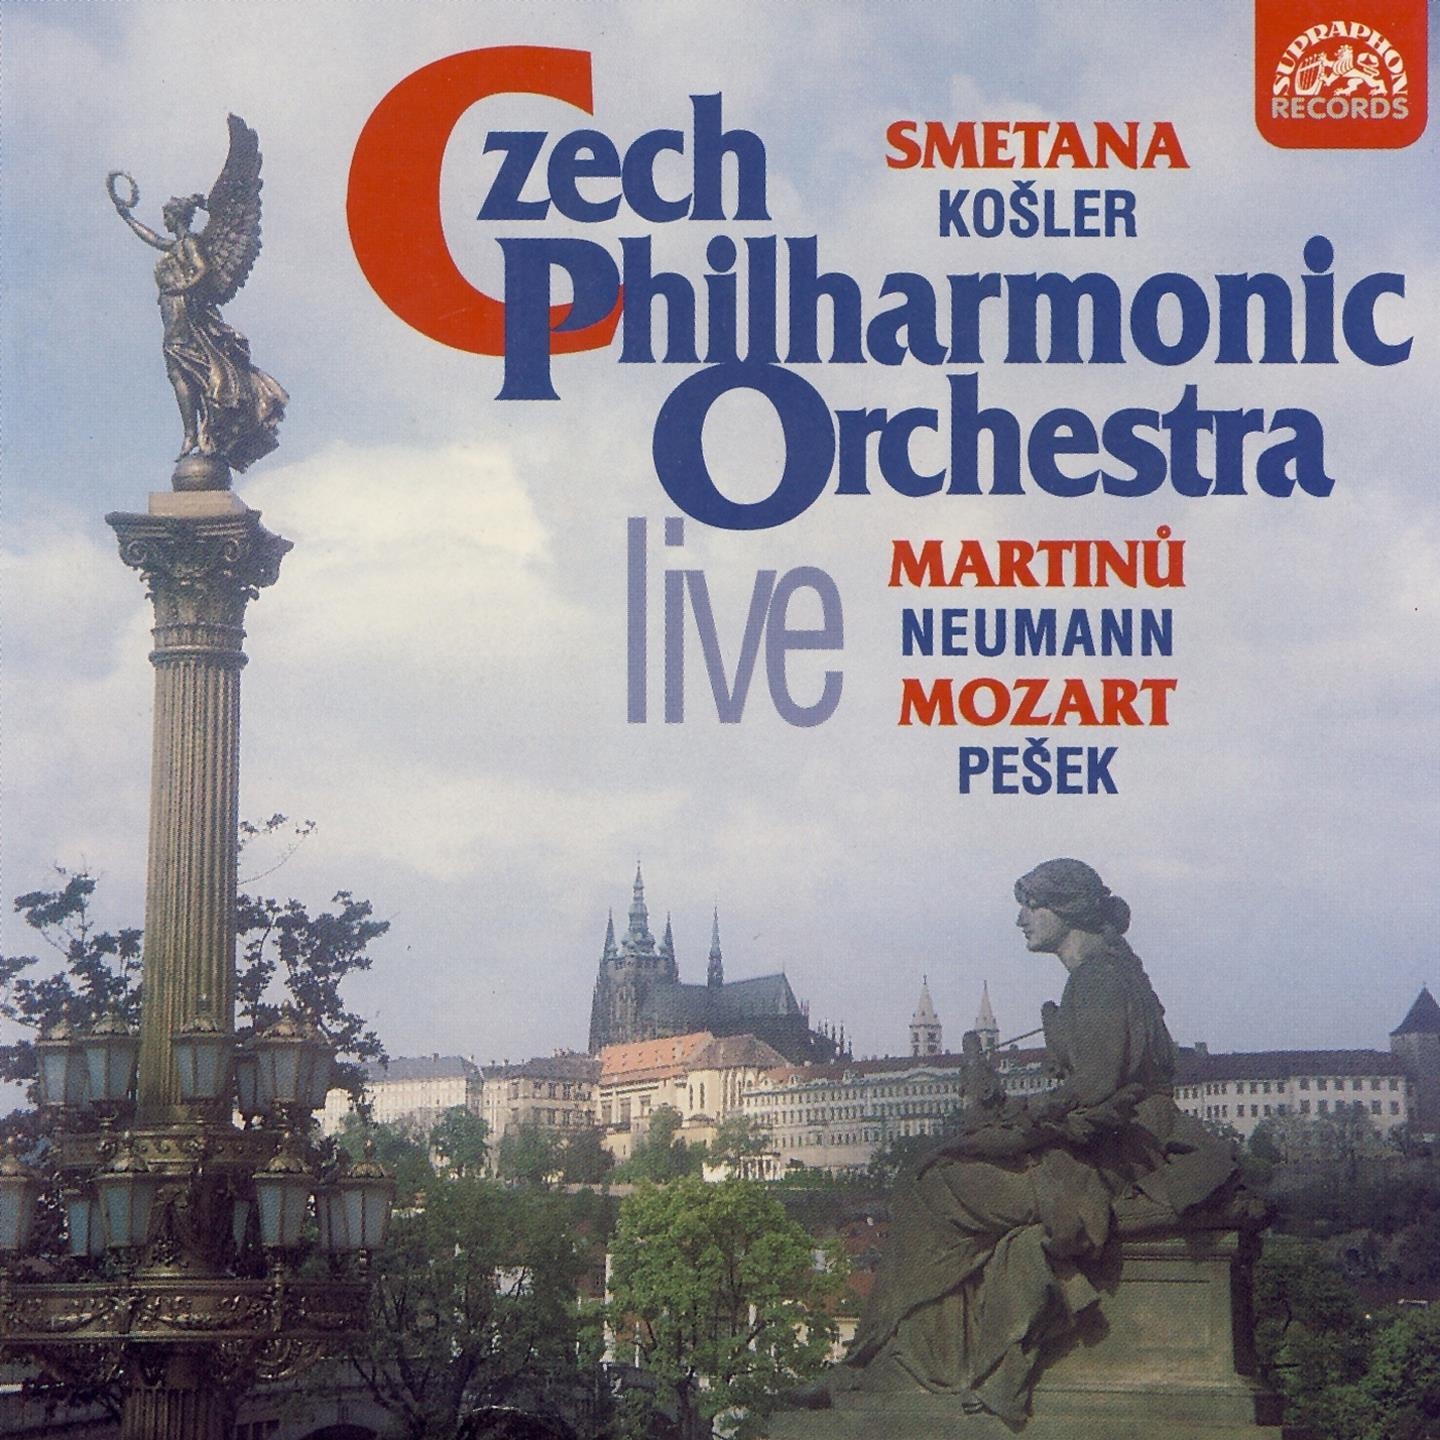 Smetana: Triumphal Symphony  Martin: Oboe Concerto  Mozart: Sinfonia concertante